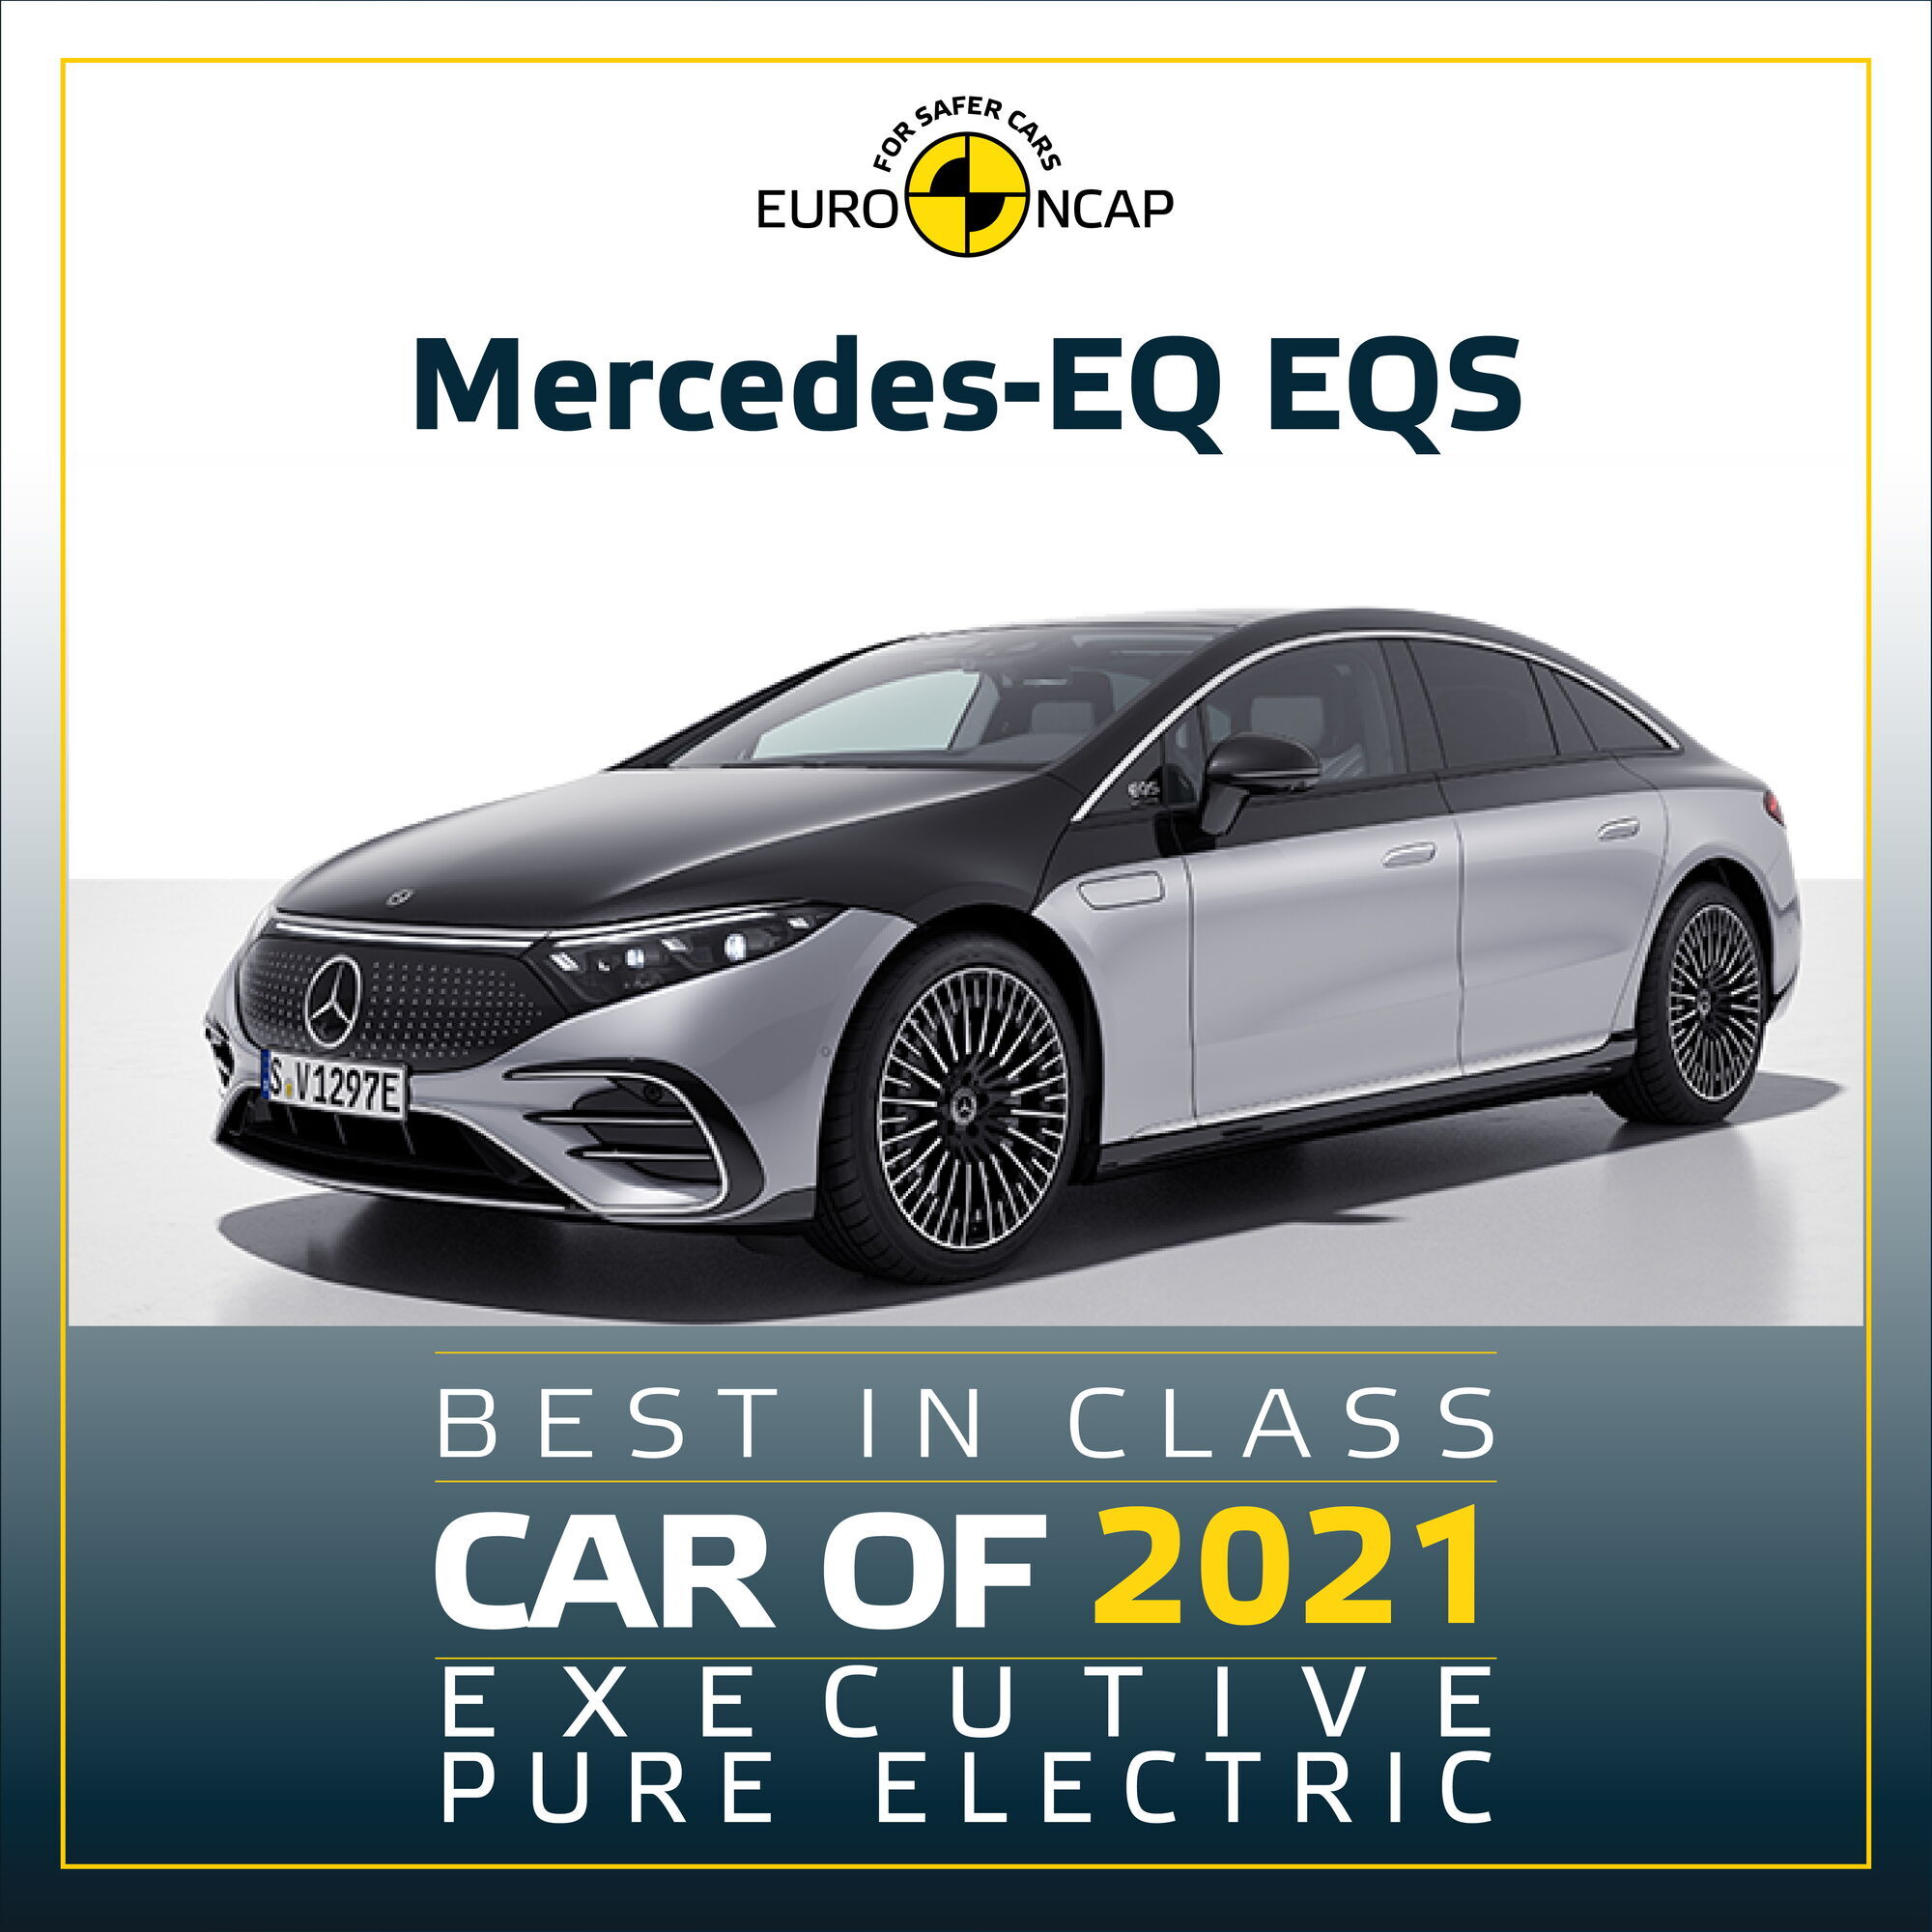 Электрический Mercedes-Benz EQS удостоился сразу двух наград